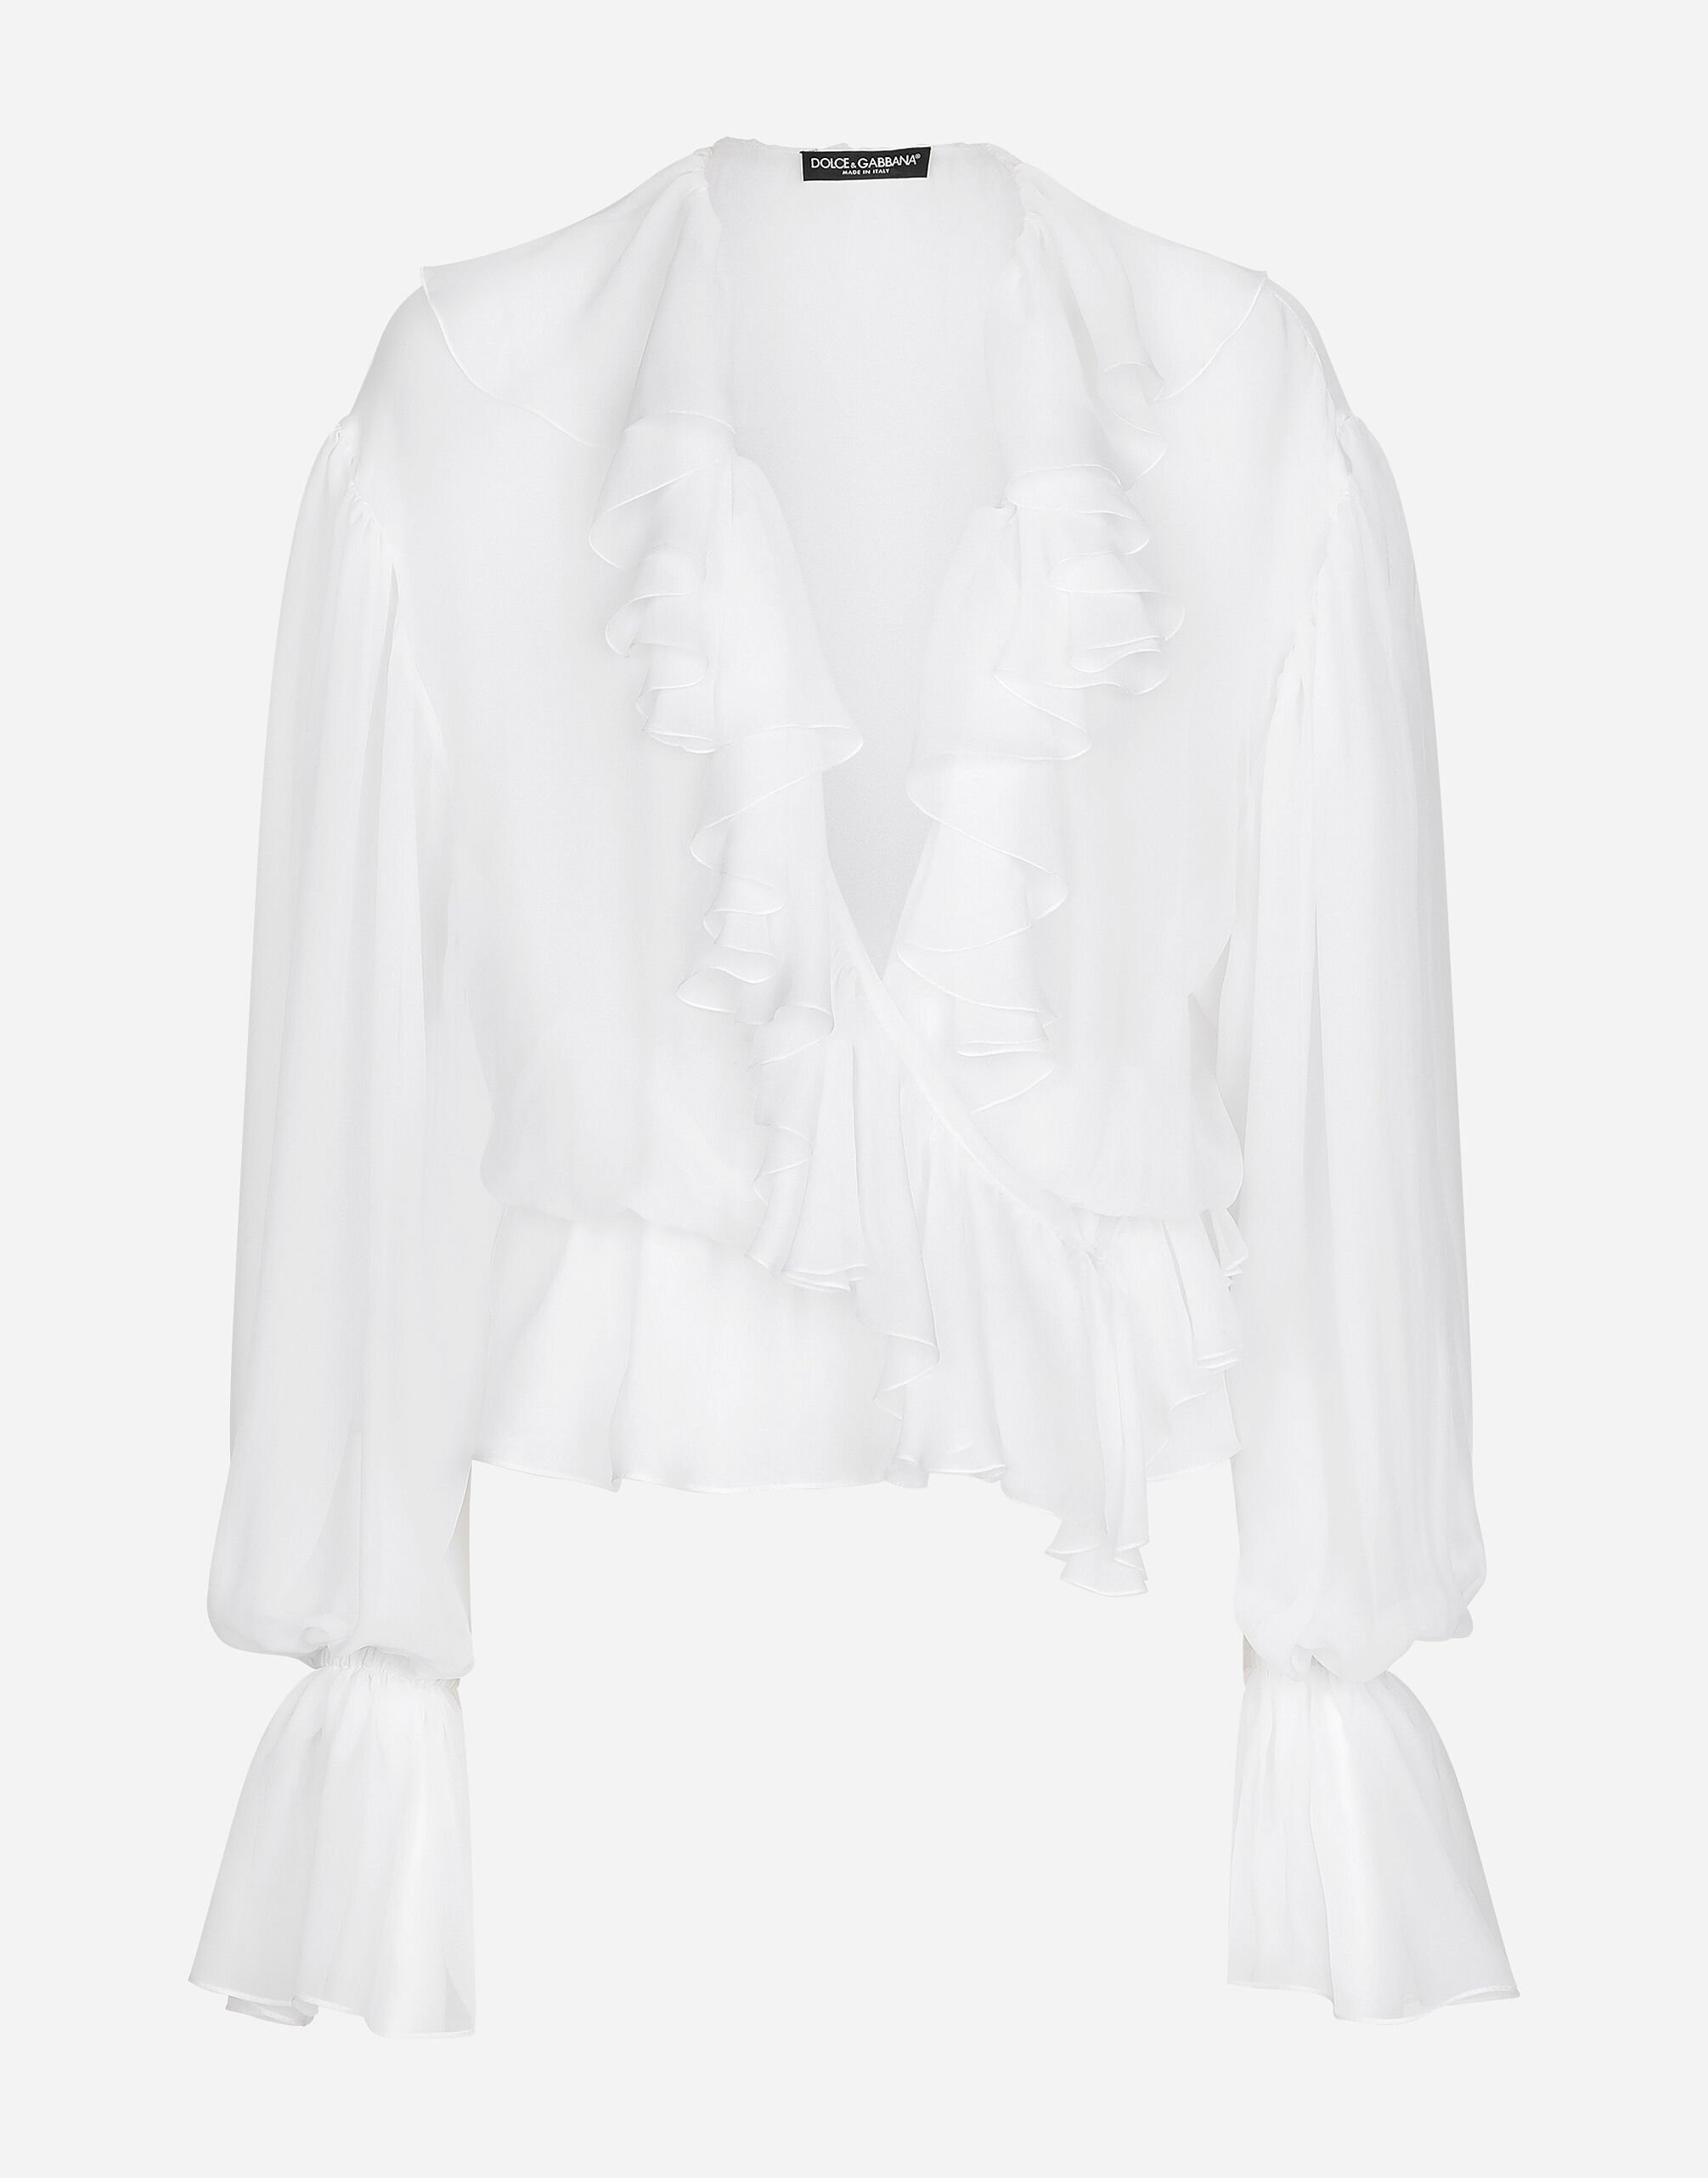 Dolce & Gabbana Chiffon blouse with ruffles White F6JEYTFUBGE